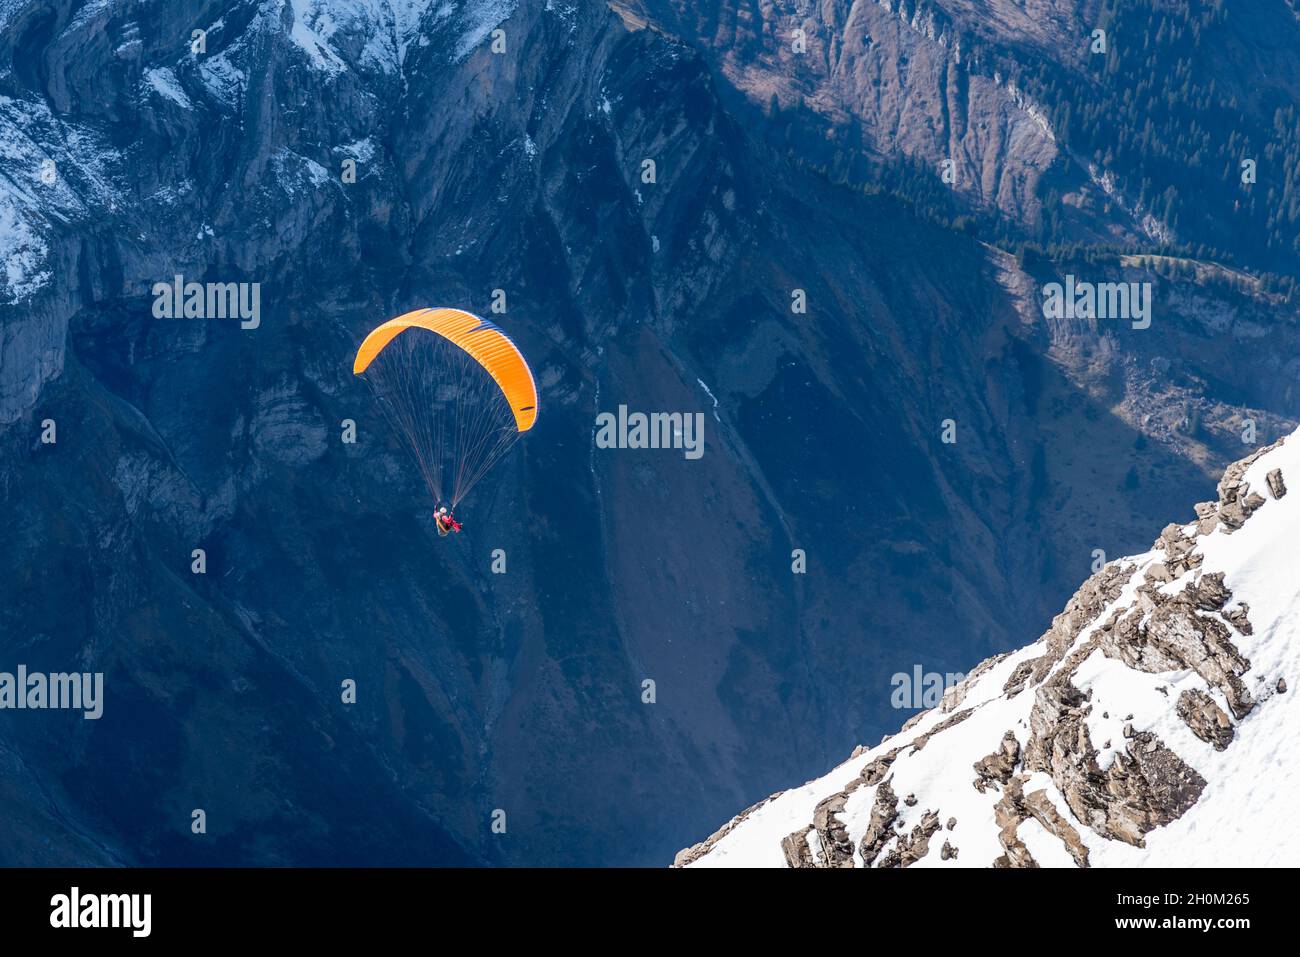 Personne effectuant un parapente sur le glacier de Diablerets à 3000 mètres d'altitude en Suisse par une journée d'hiver Banque D'Images